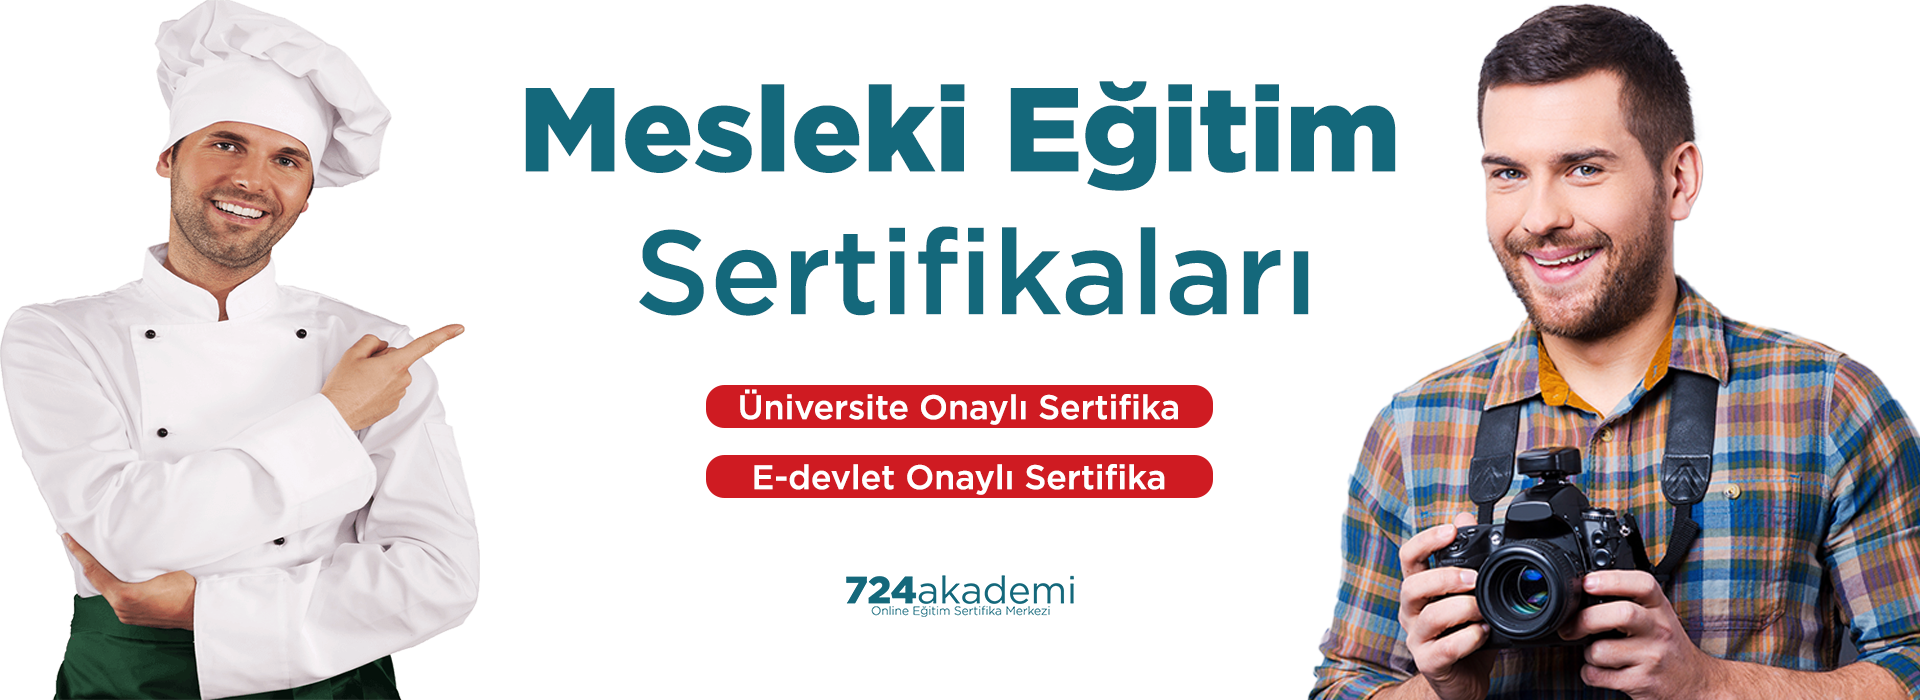 online sertifika banner